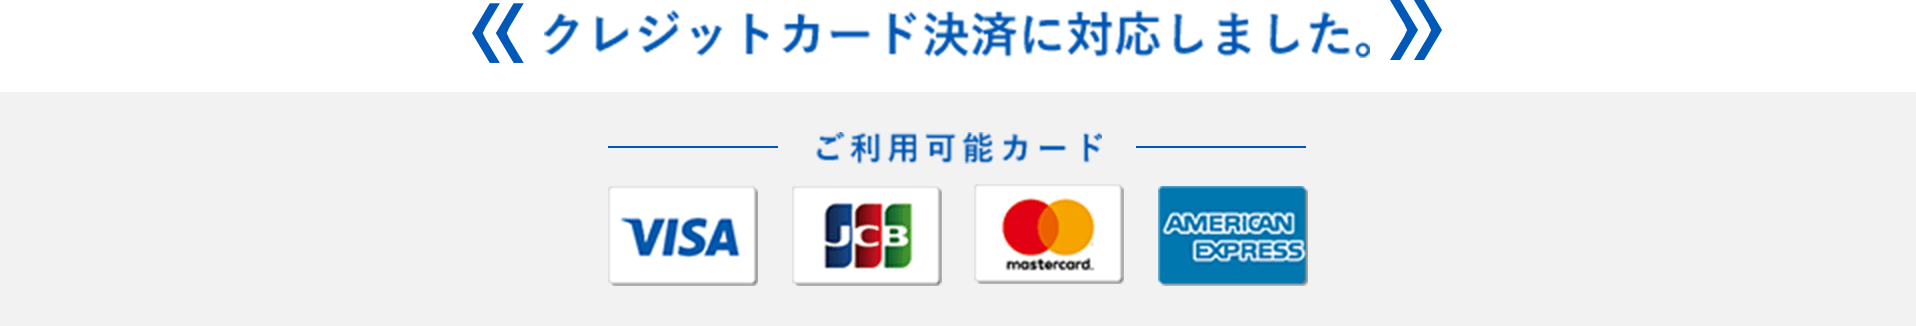 クレジットカード決済に対応しました。ご利用可能カード:VISA, JCB, mastercard, AMERICAN EXPRESS